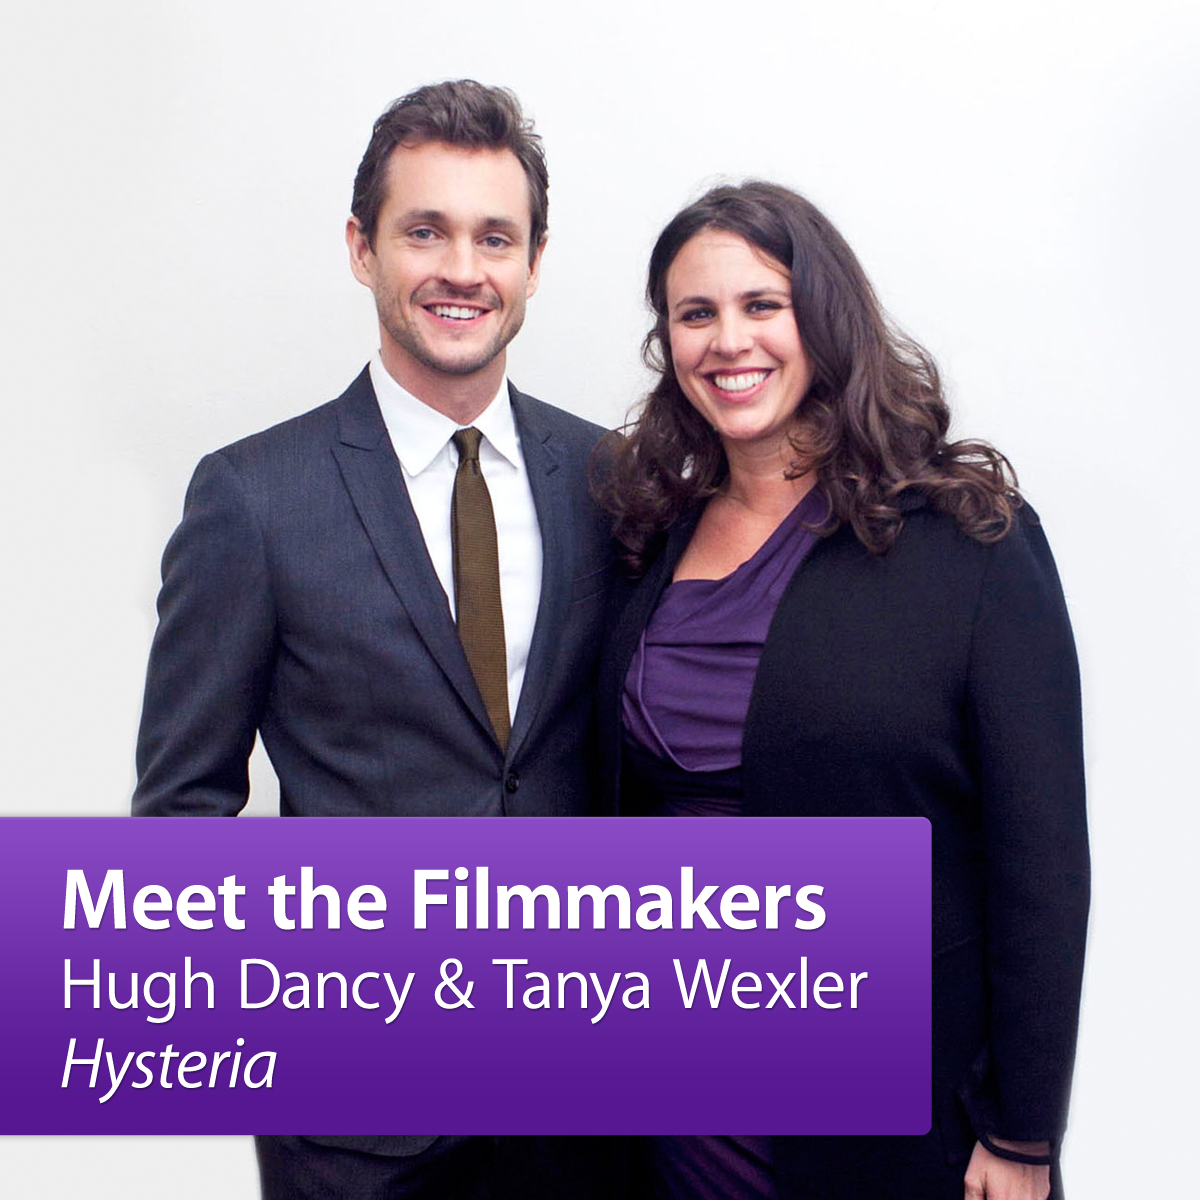 Hugh Dancy and Tanya Wexler, “Hysteria”: Meet the Filmmakers